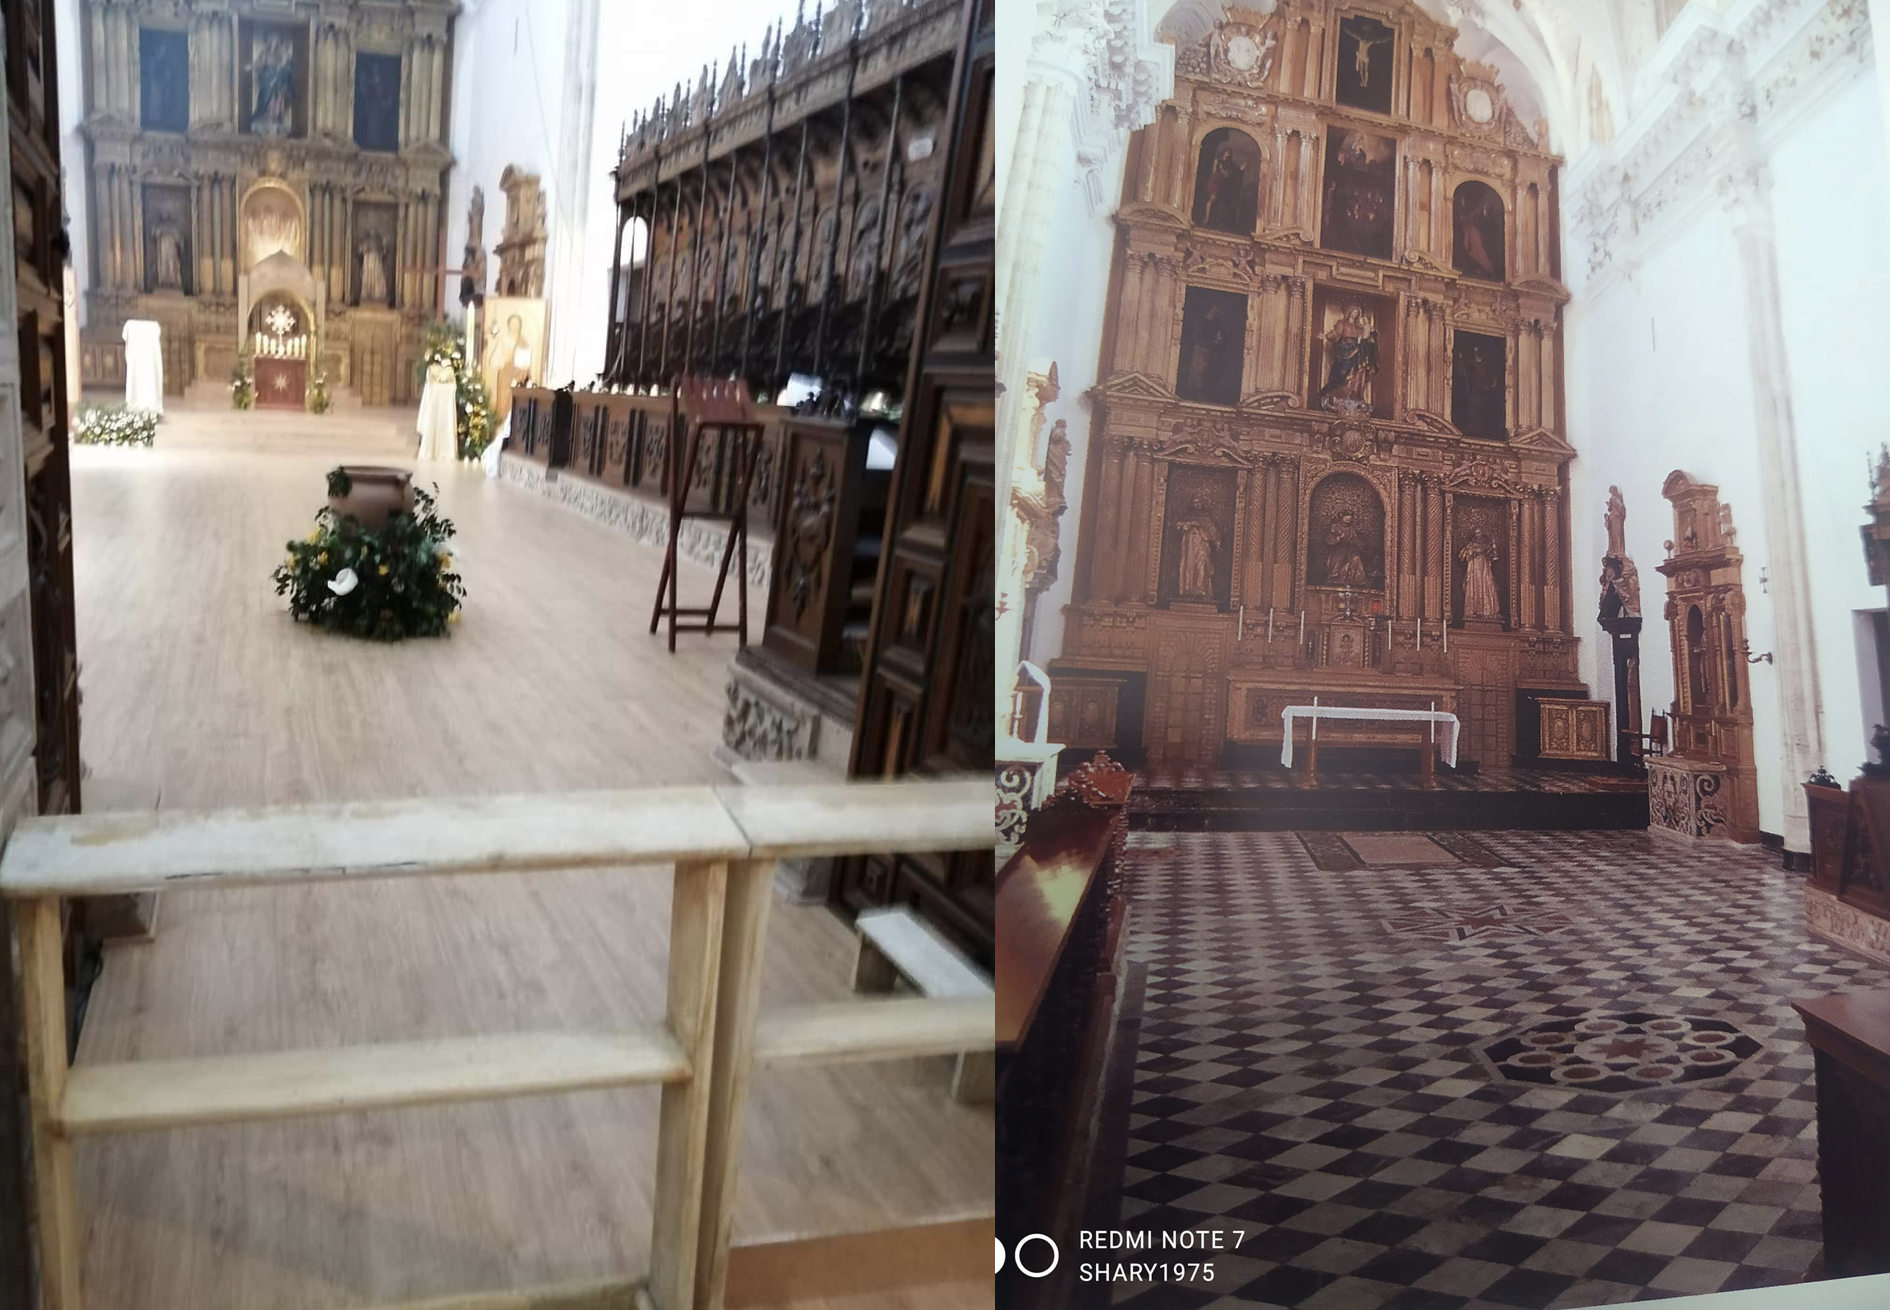 Imagen difundida por las redes del interior de la iglesia con el cambio que vulnera el estado original, tal y como se ve en la derecha. 